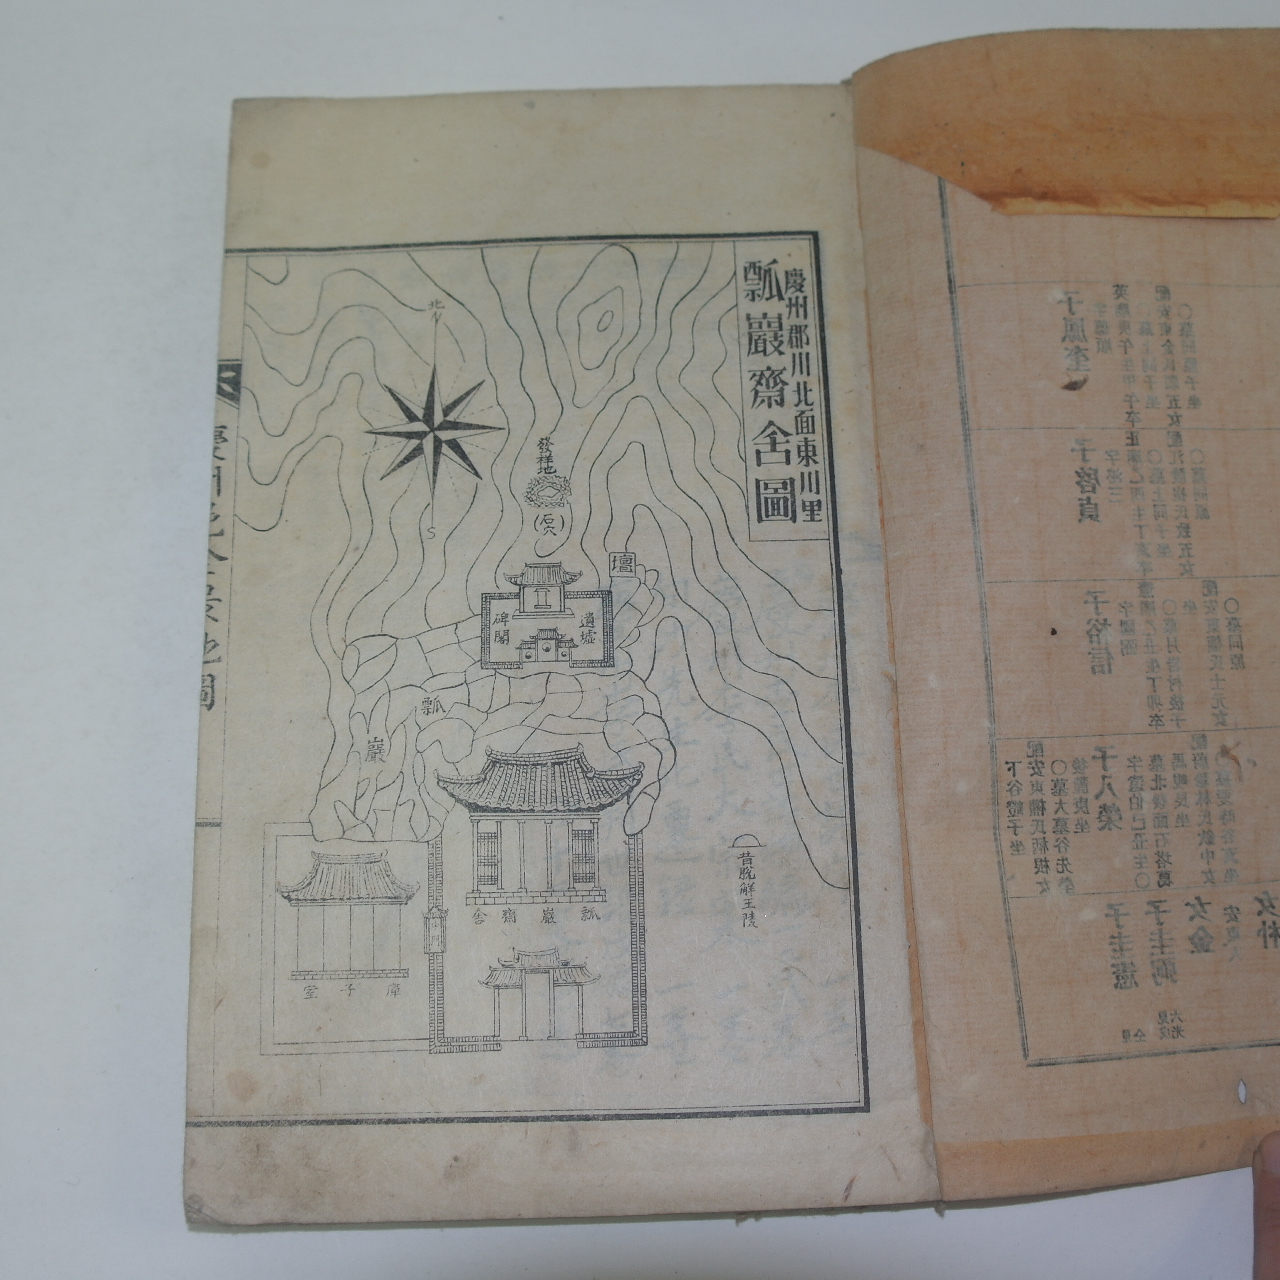 1934년 경주이씨대종안(慶州李氏大宗案) 1책완질